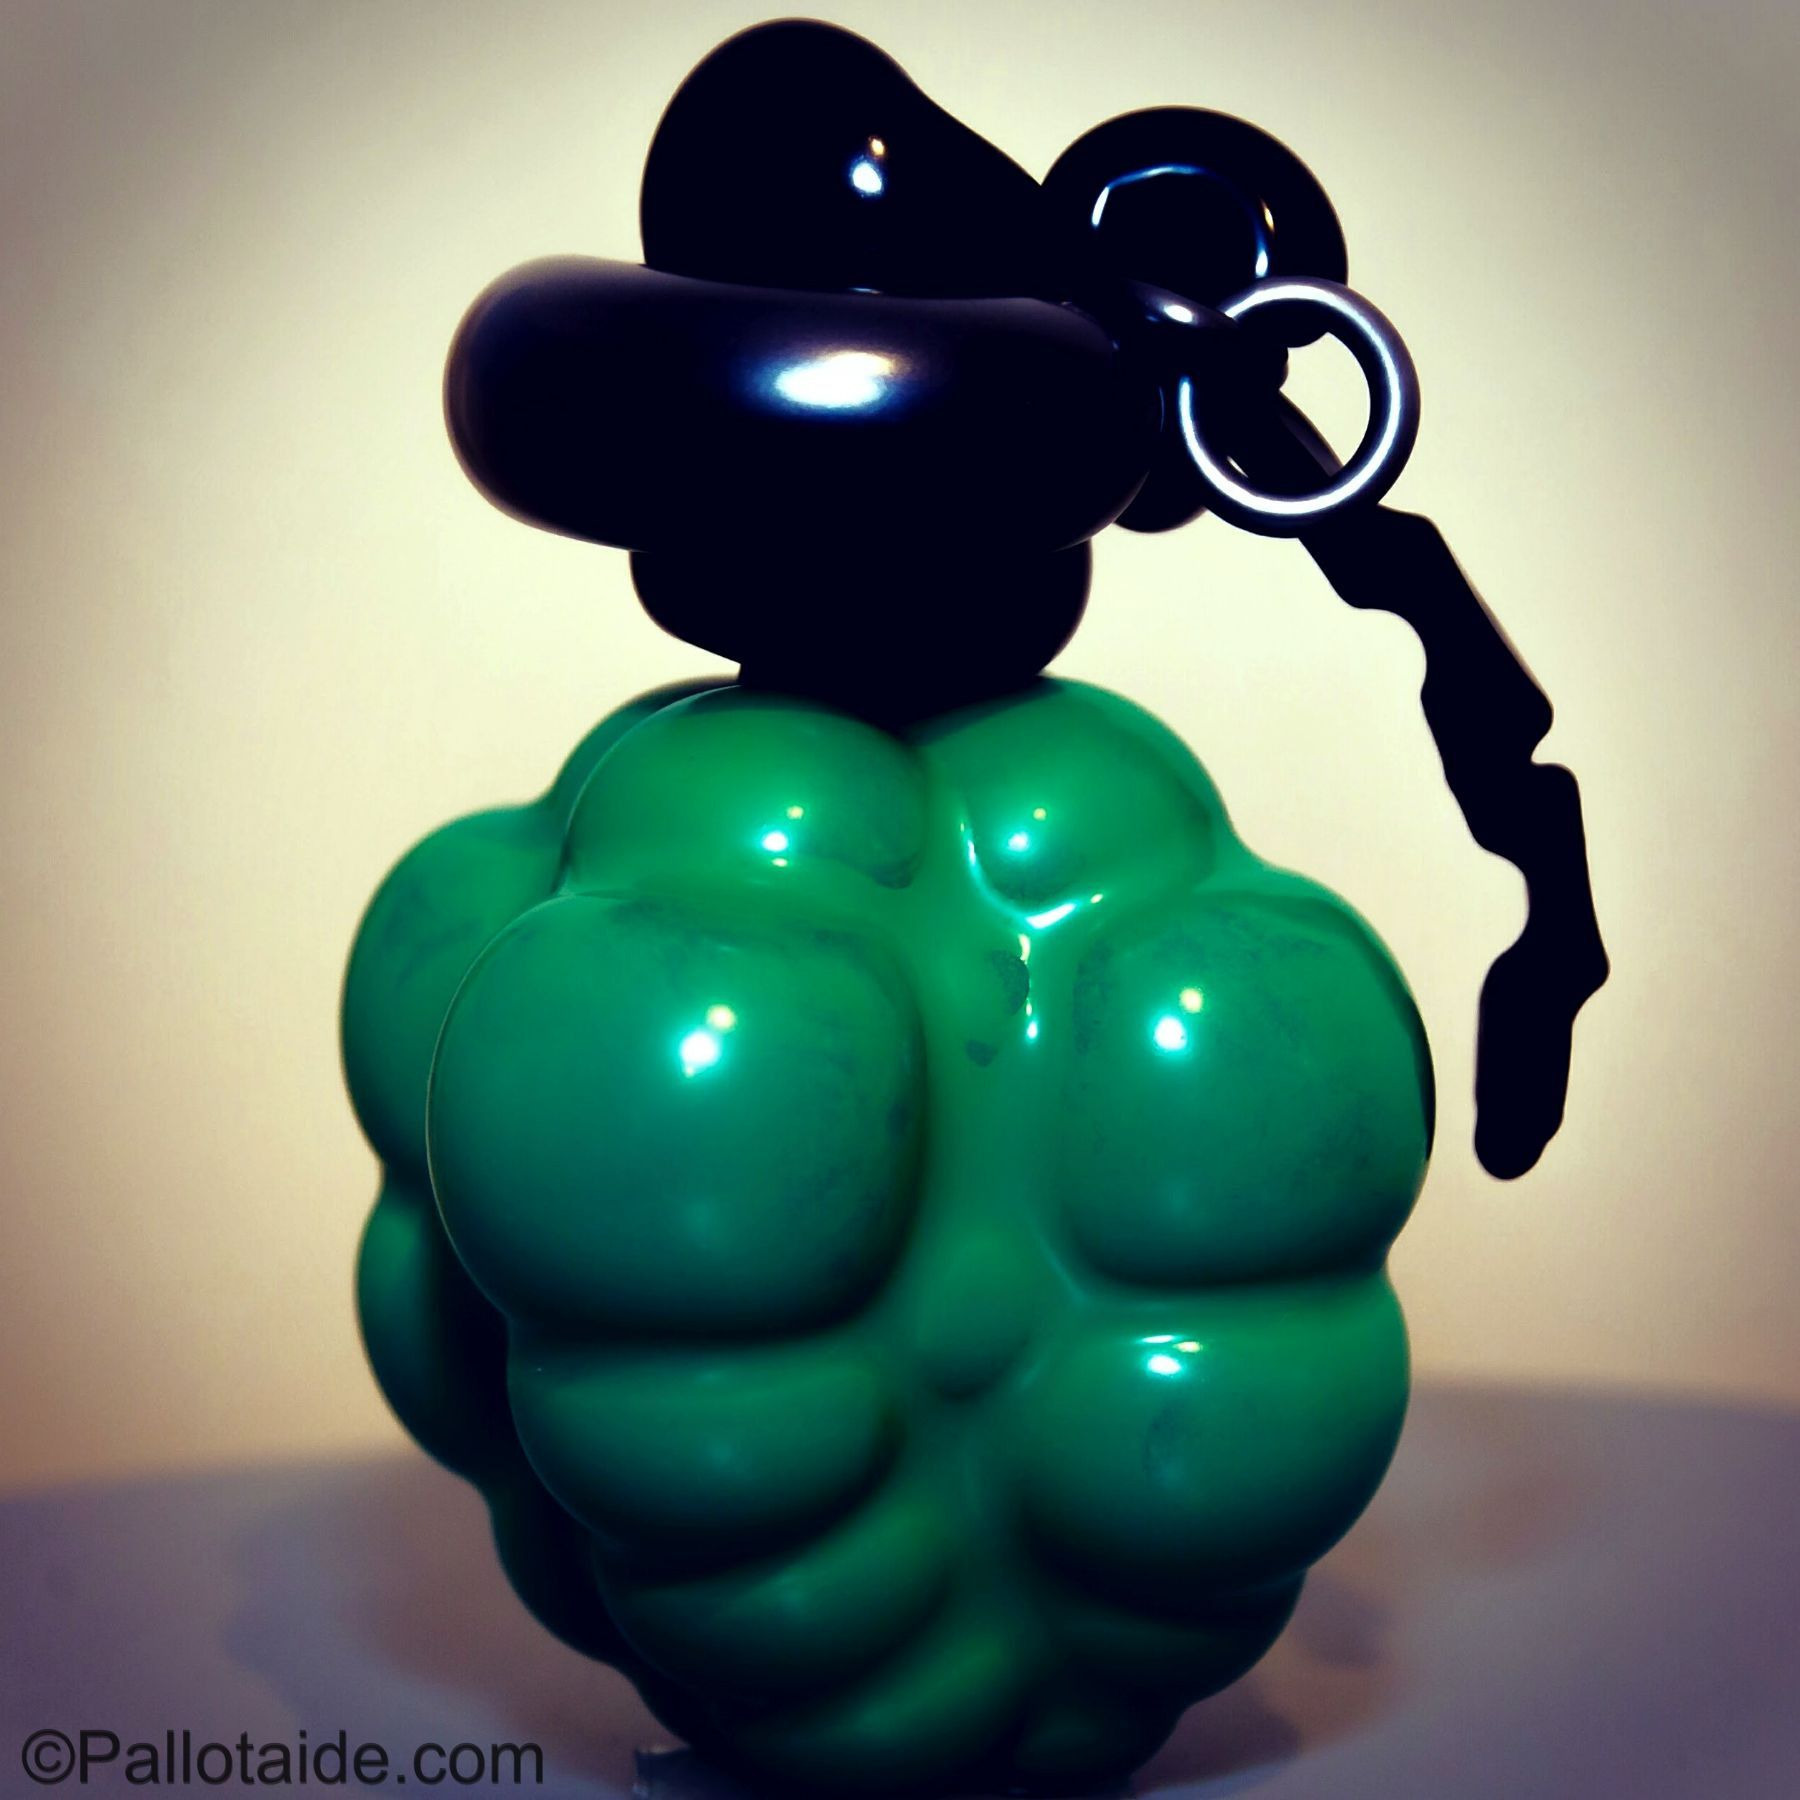 hand grenade - made using 100% latex balloons by Pallotaide - tehty pelkistä lateksi-ilmapalloista. Käsikranaatti.